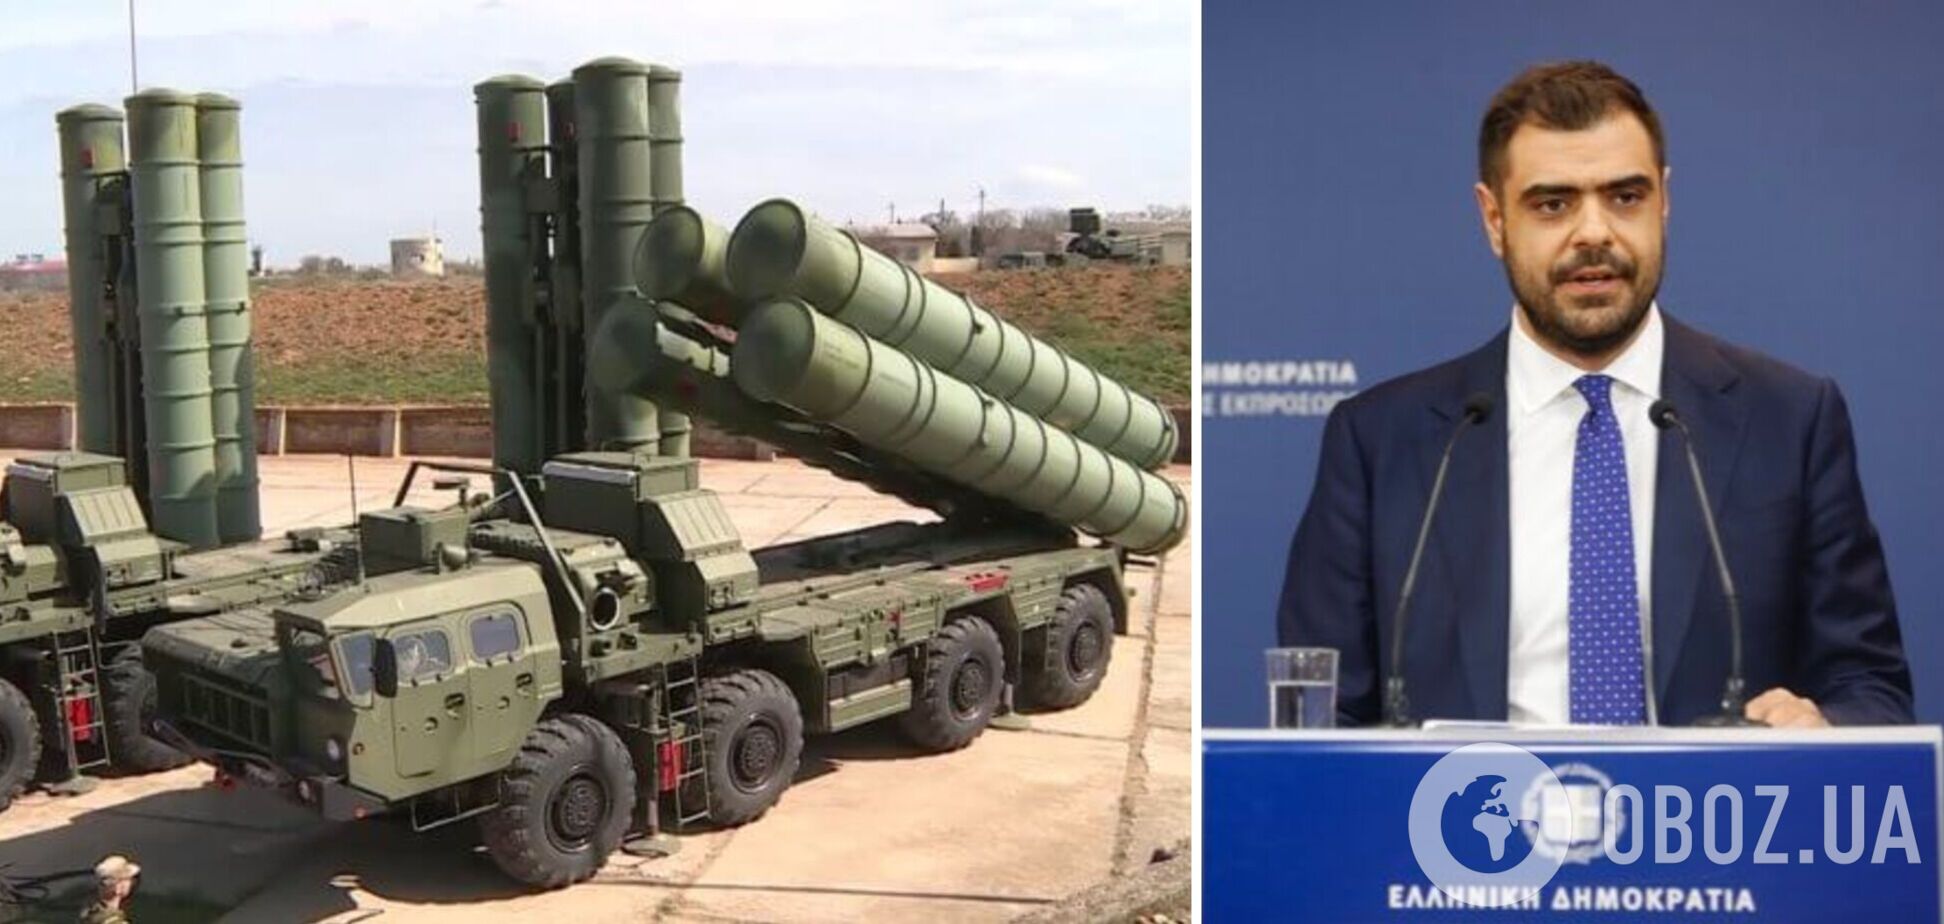 'Не было даже намерения': в Греции заявили, что не будут передавать Украине ракеты С-300